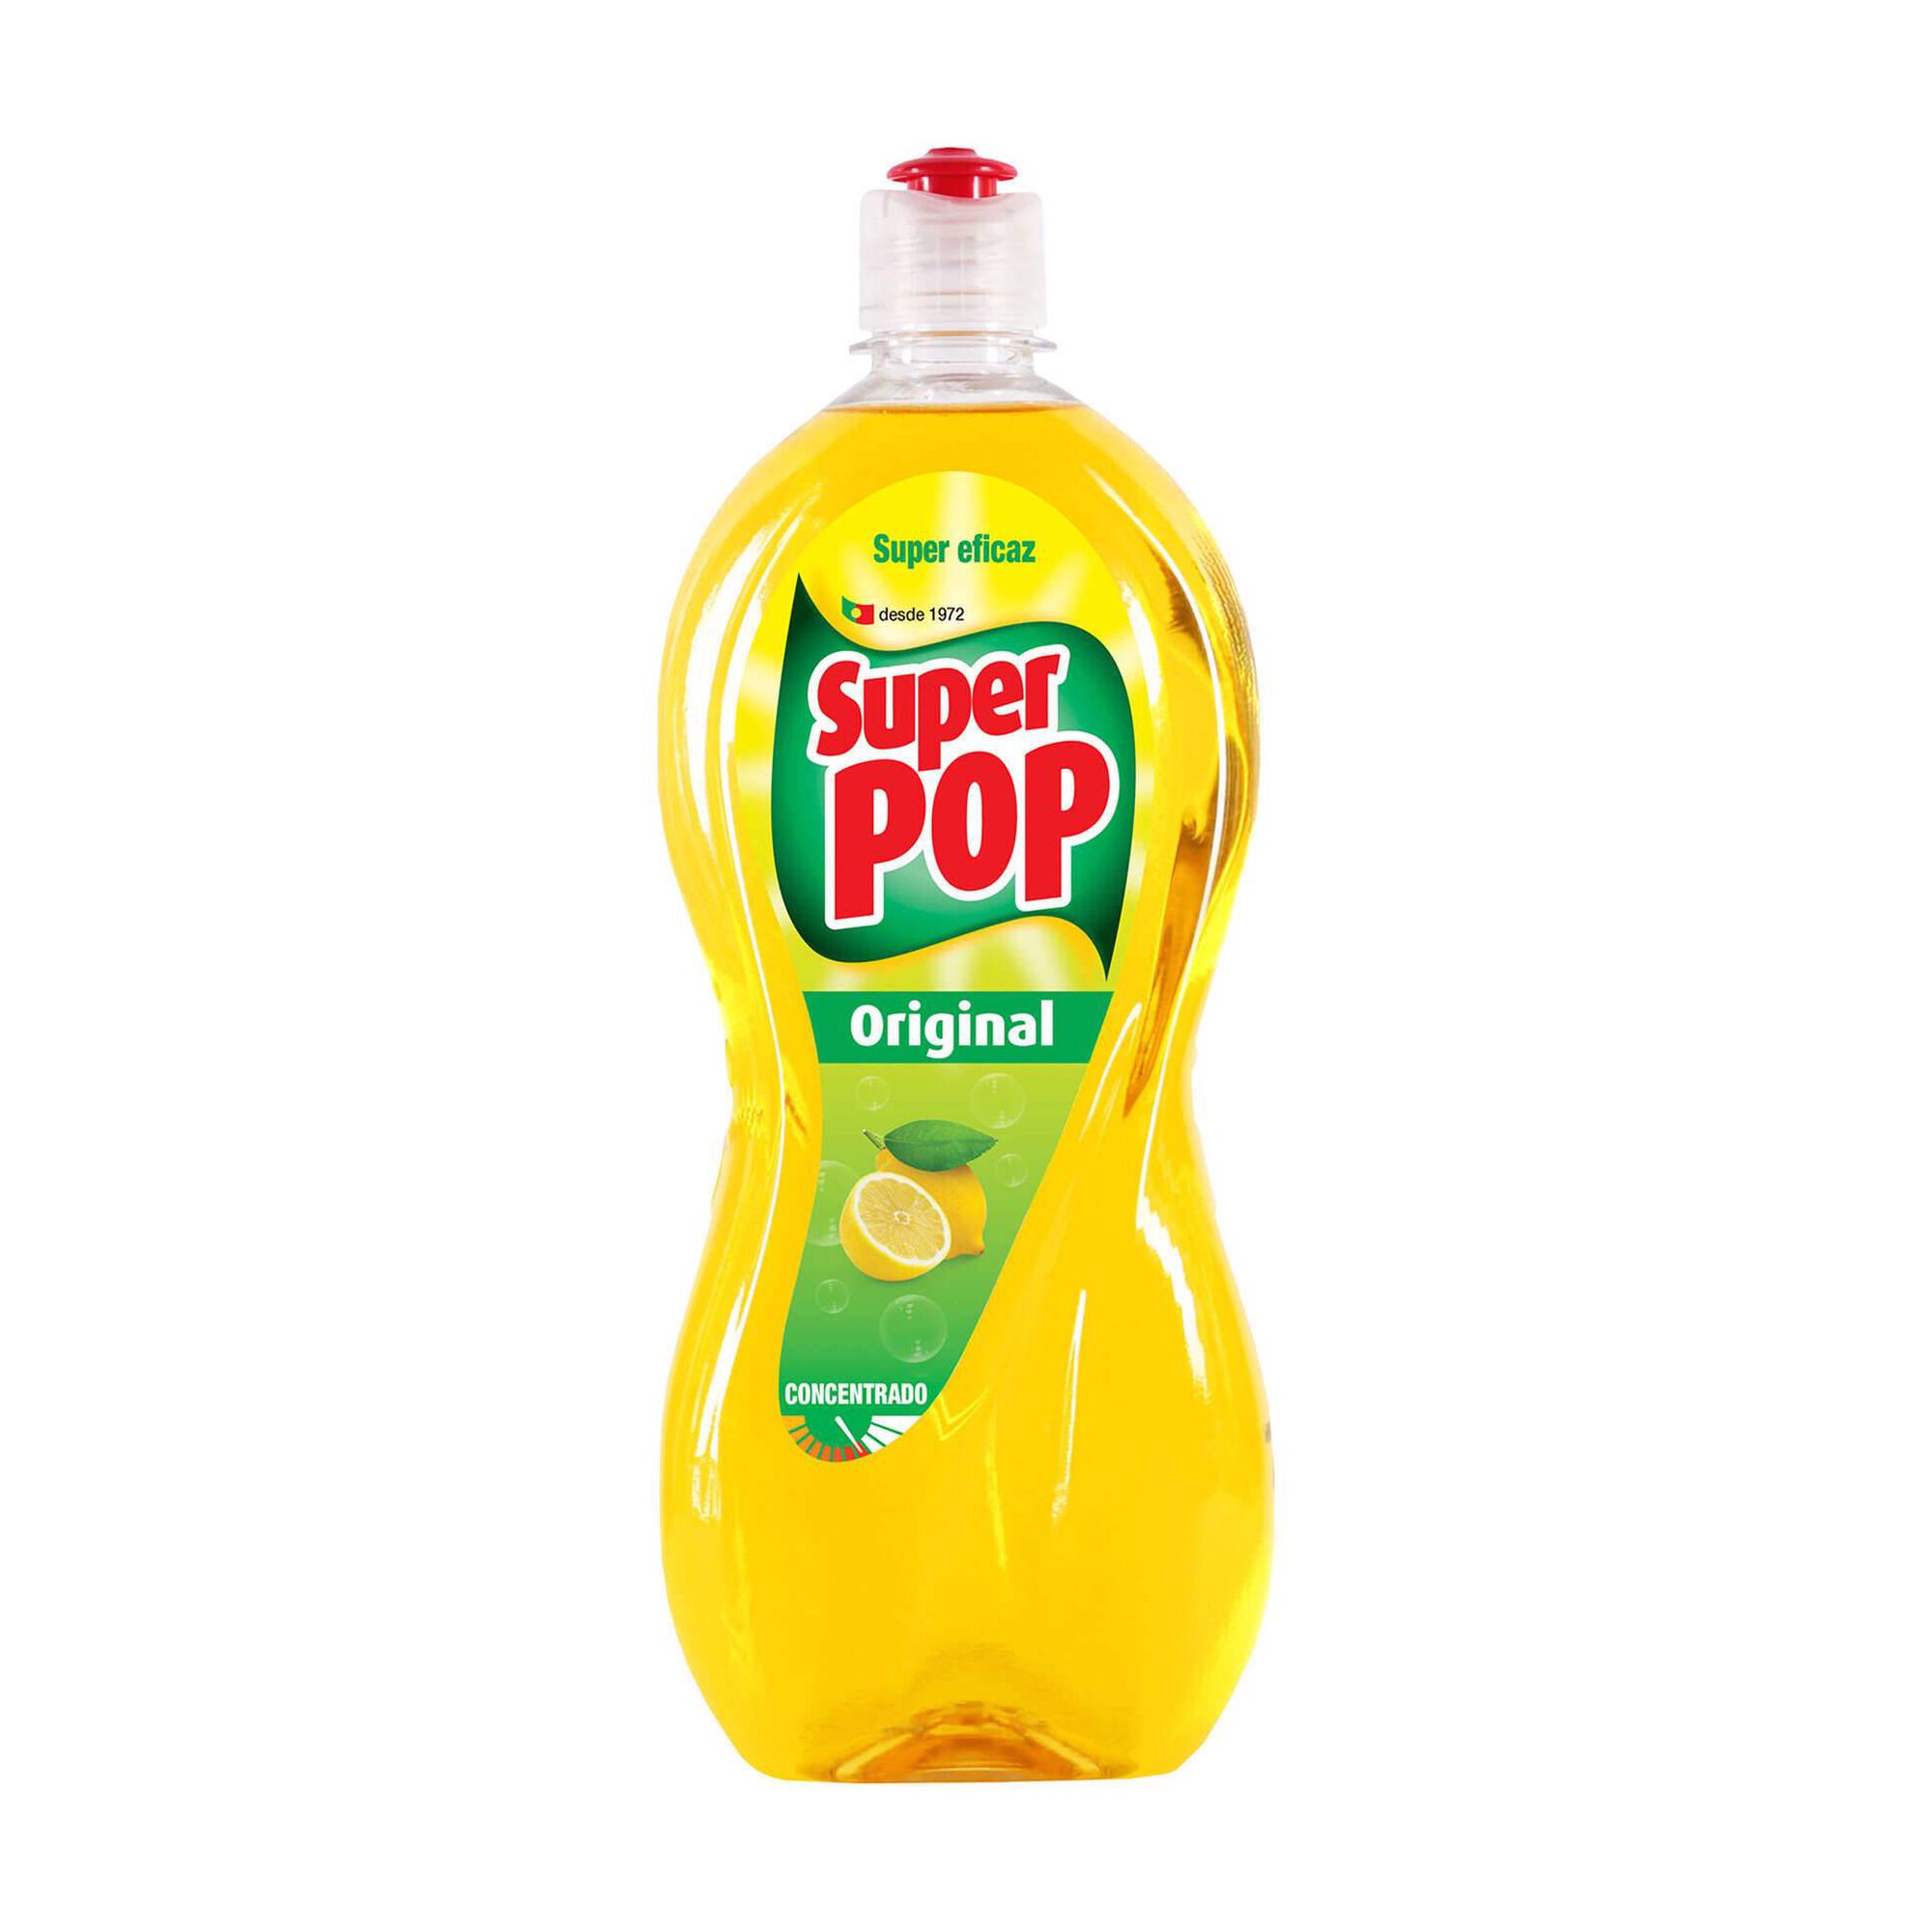 Detergente Manual Loiça Limão